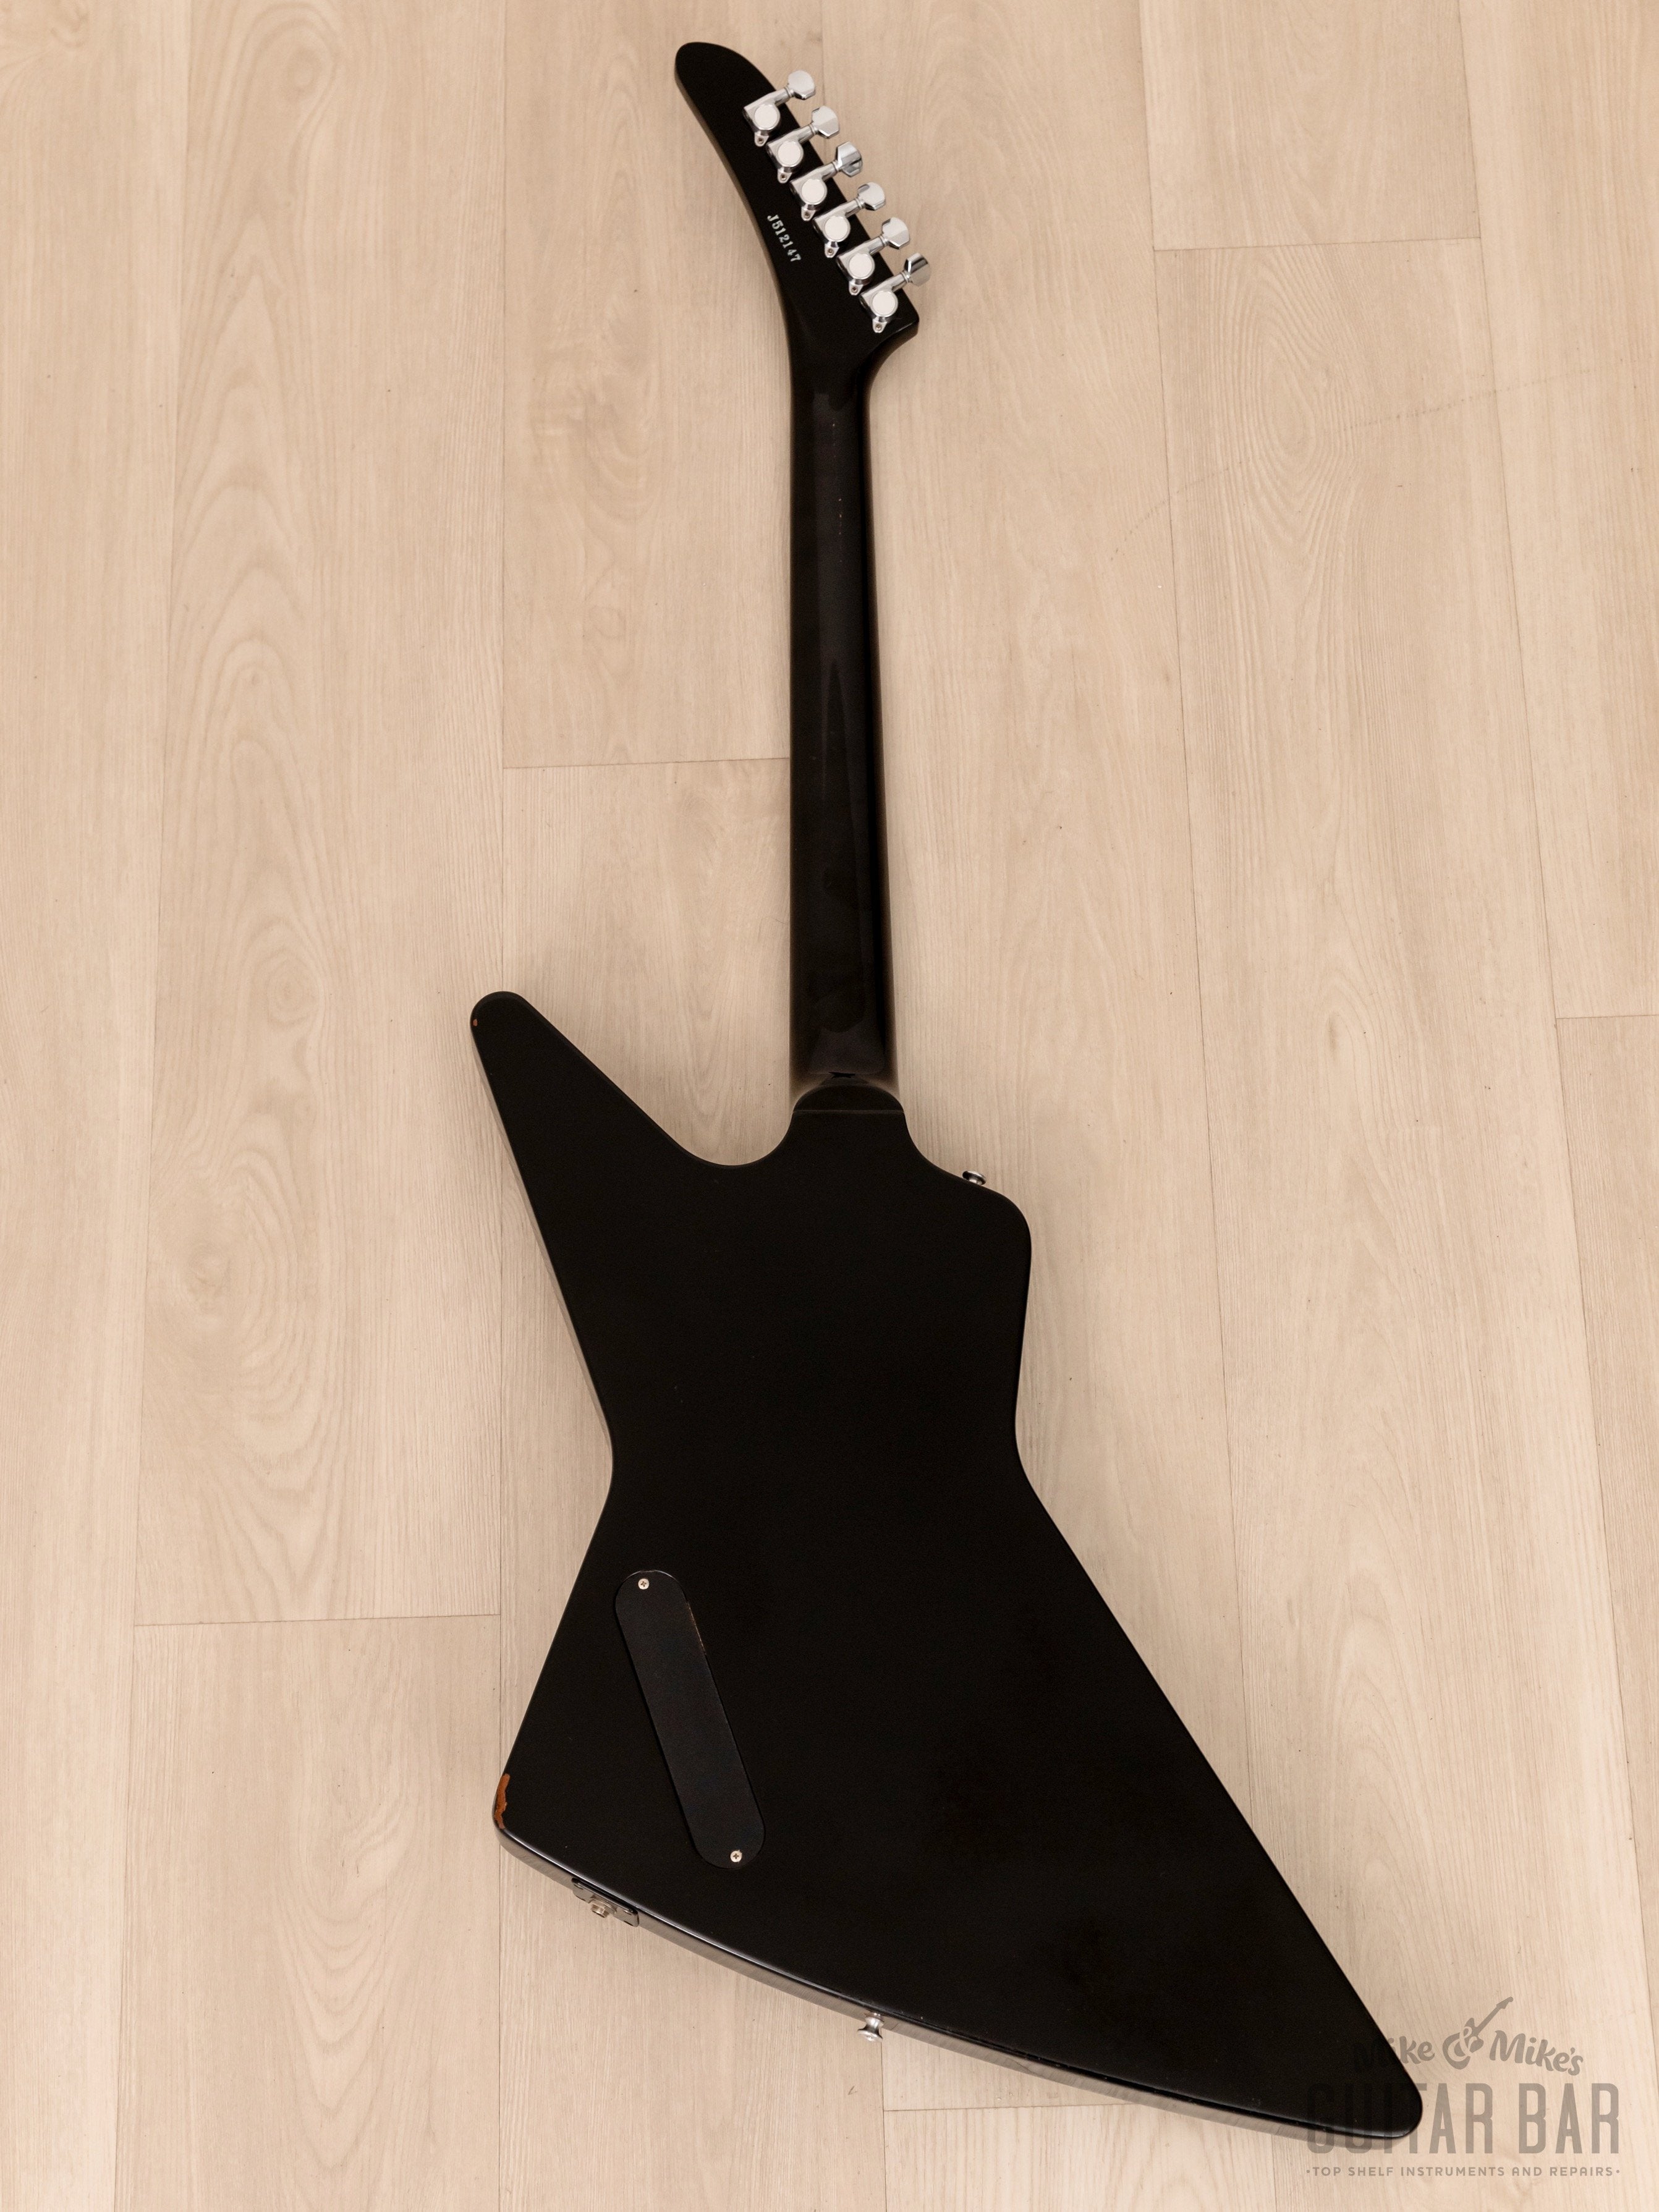 1995 Orville Explorer Gibson-Licensed Guitar Ebony, 100% Original, Japan Terada